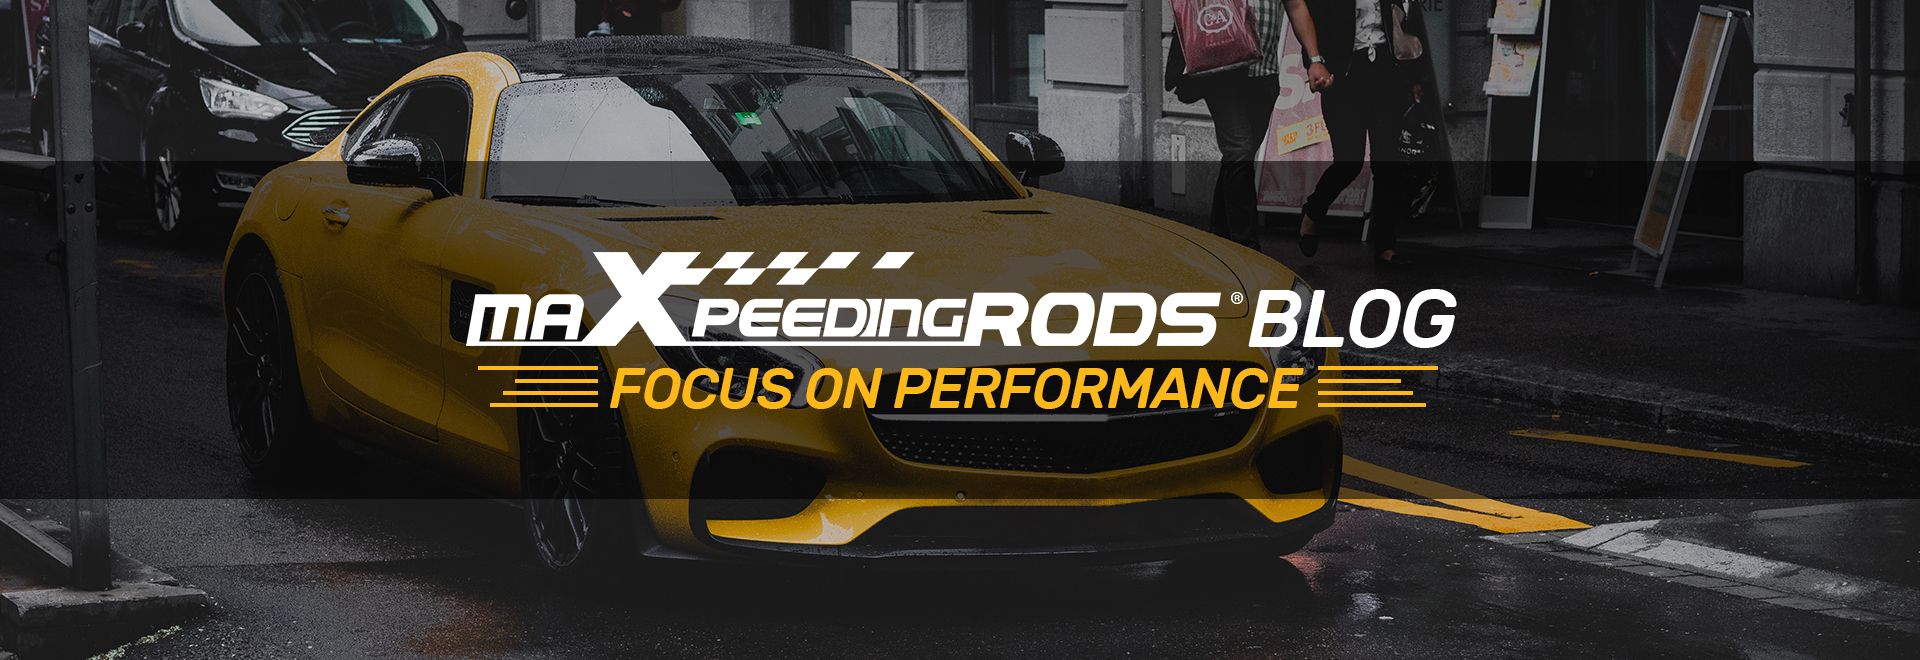 MaXpeedingRods Blog - Focus On Performance|